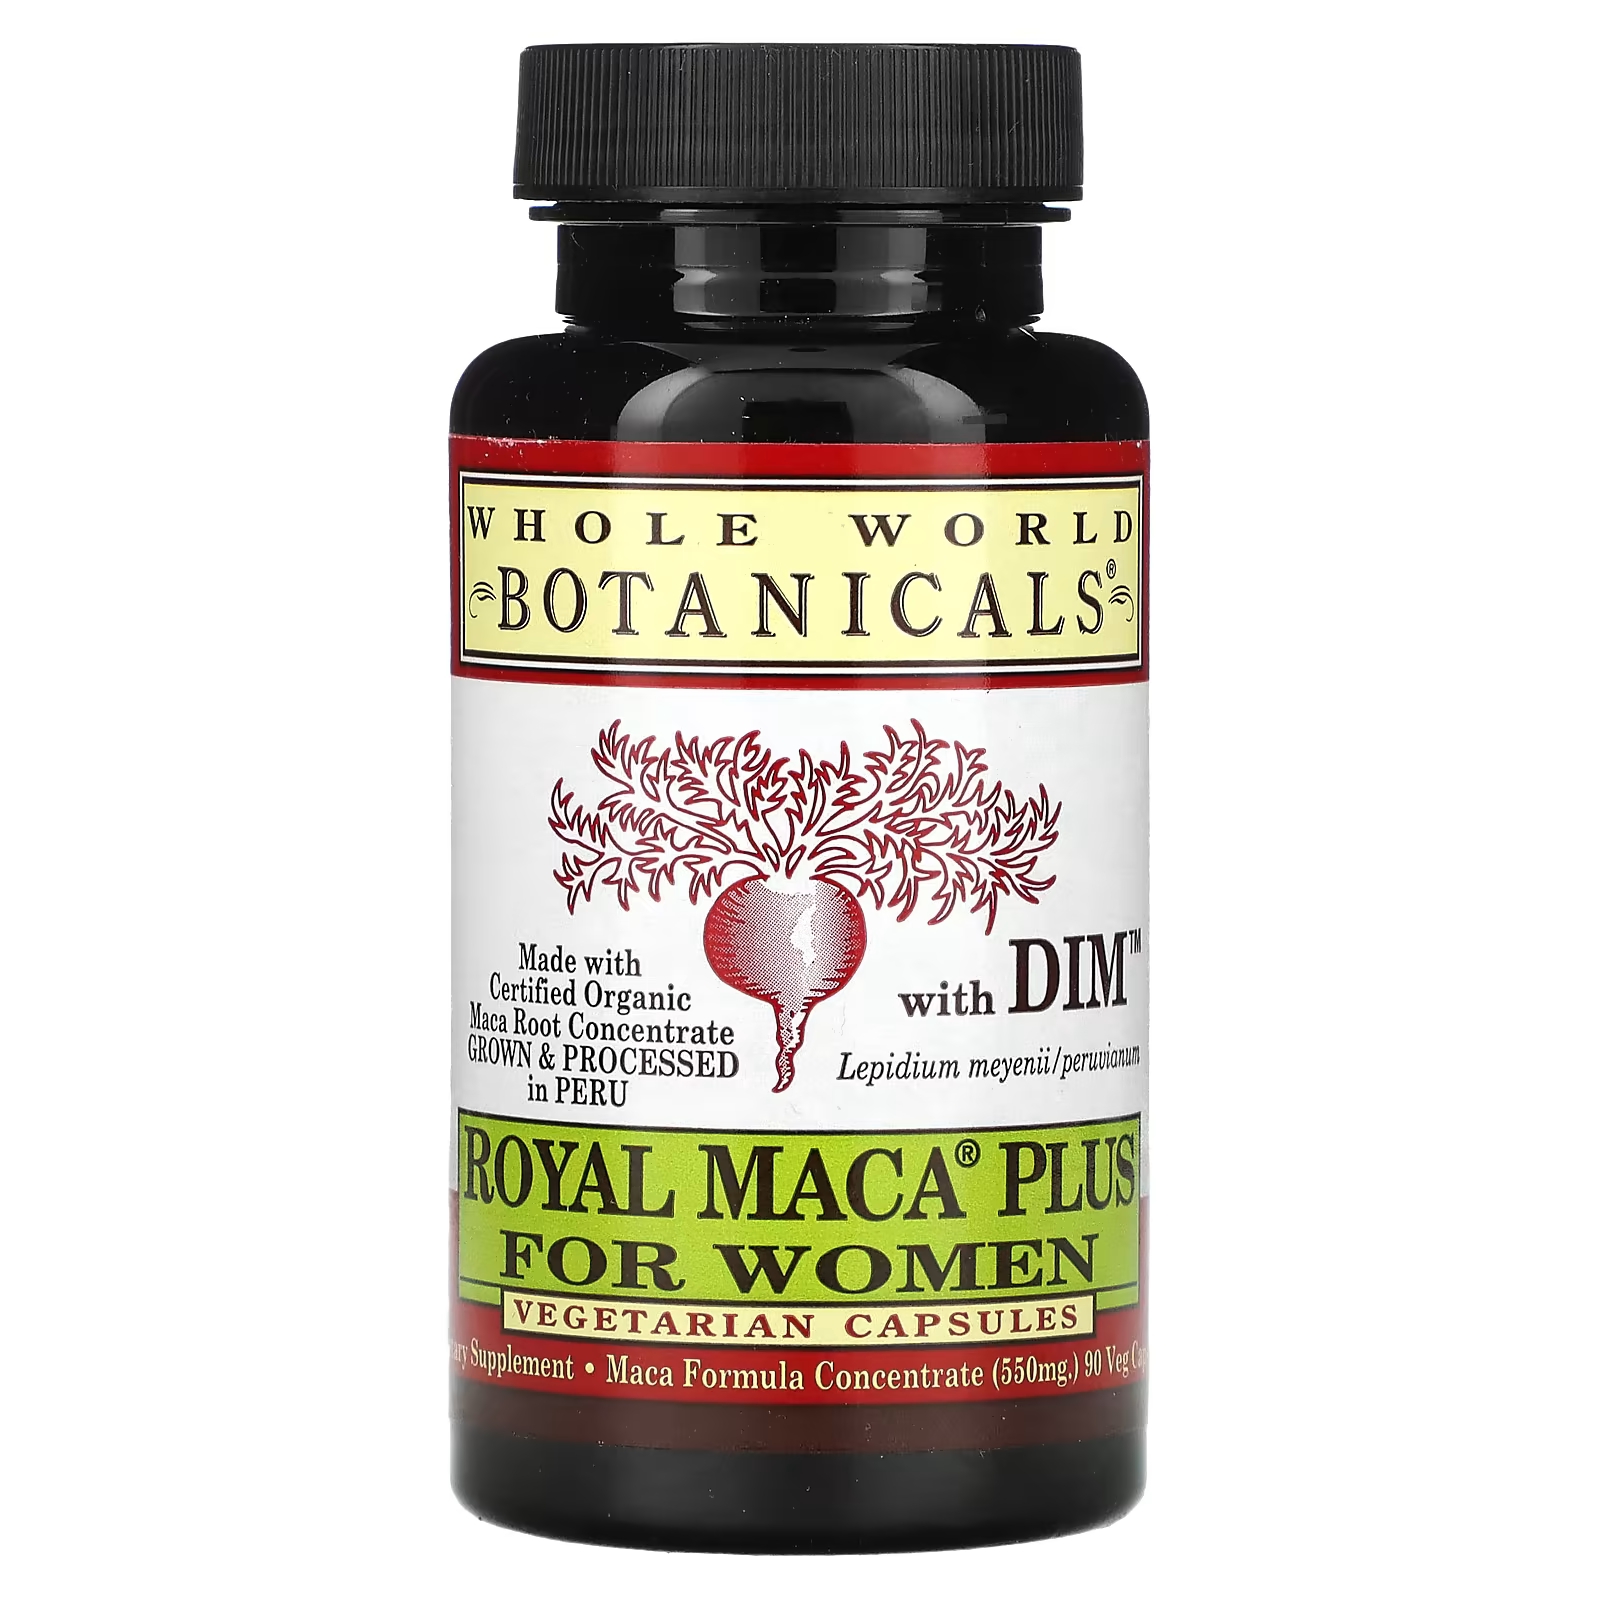 Пищевая добавка Whole World Botanicals Royal Maca Plus с DIM 900 мг, 90 капсул (550 мг на капсулу) сет маки